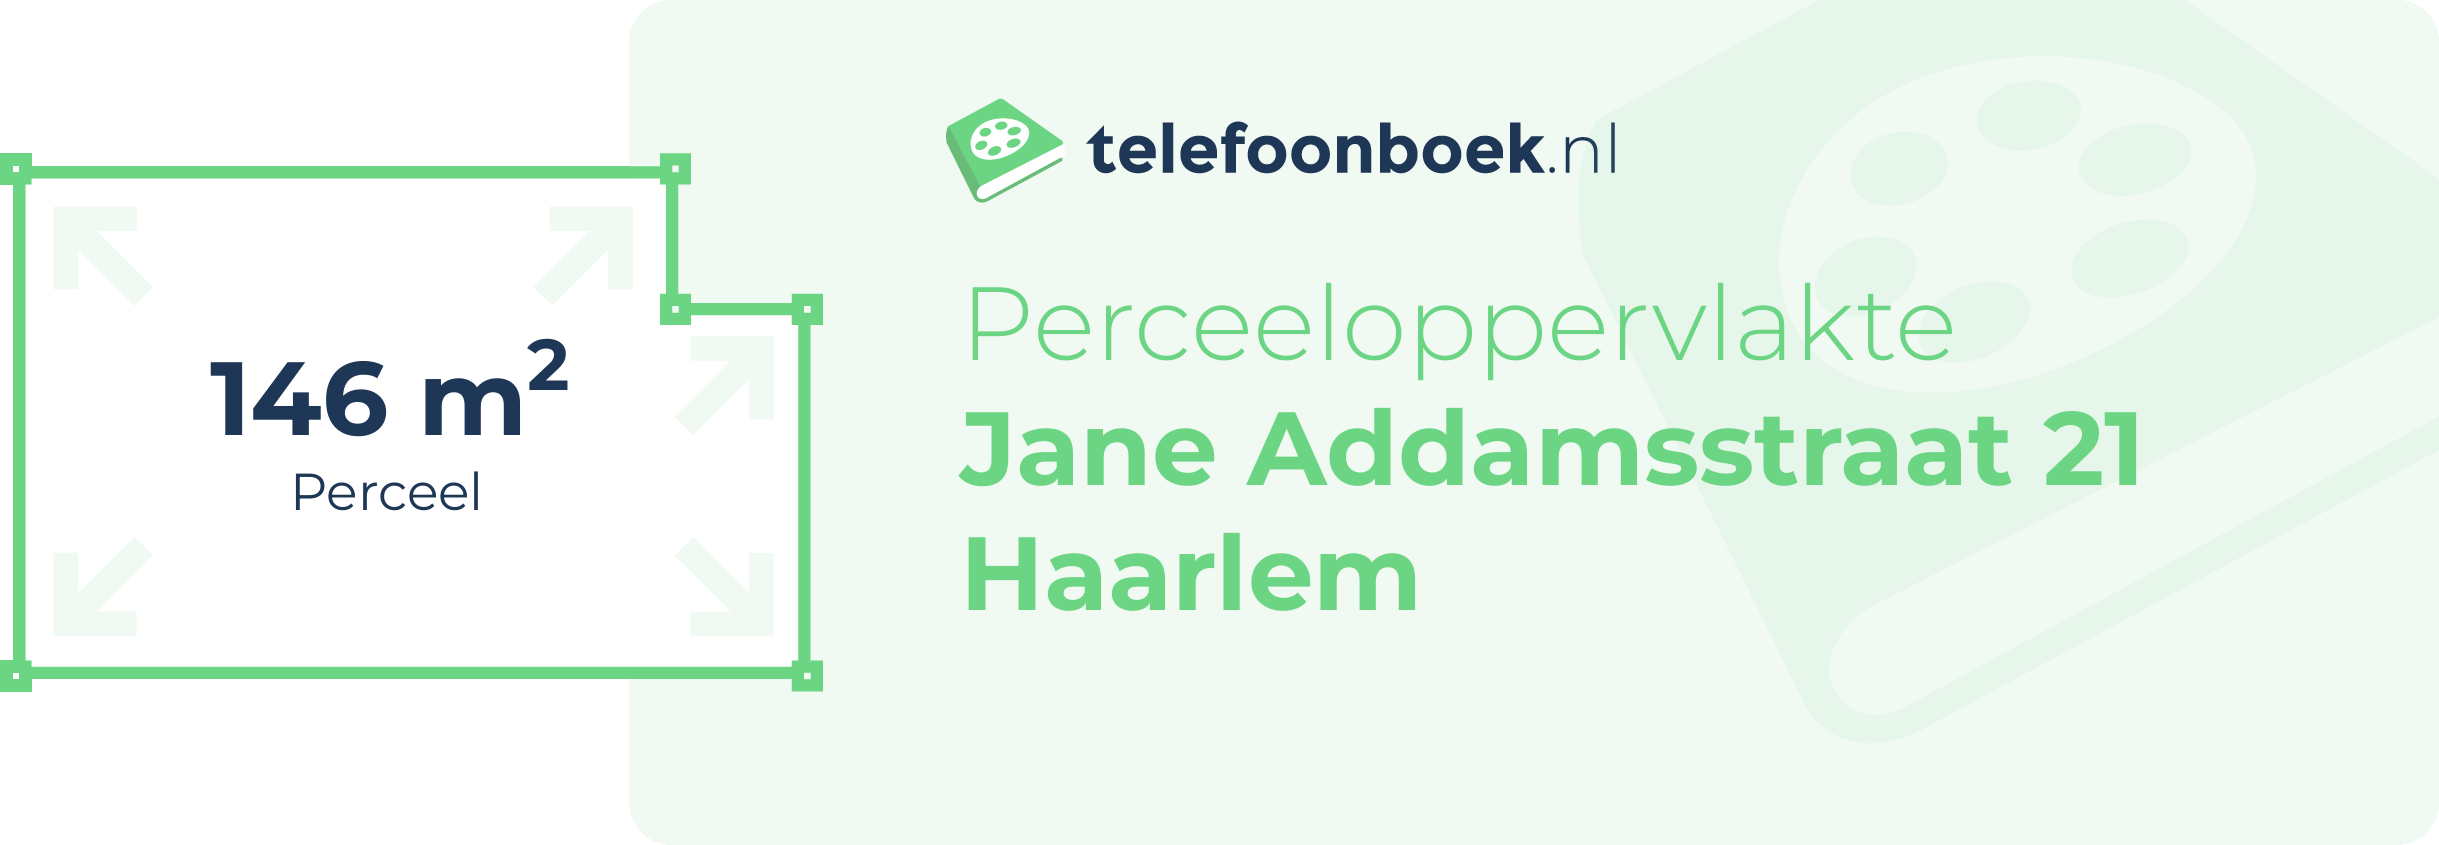 Perceeloppervlakte Jane Addamsstraat 21 Haarlem